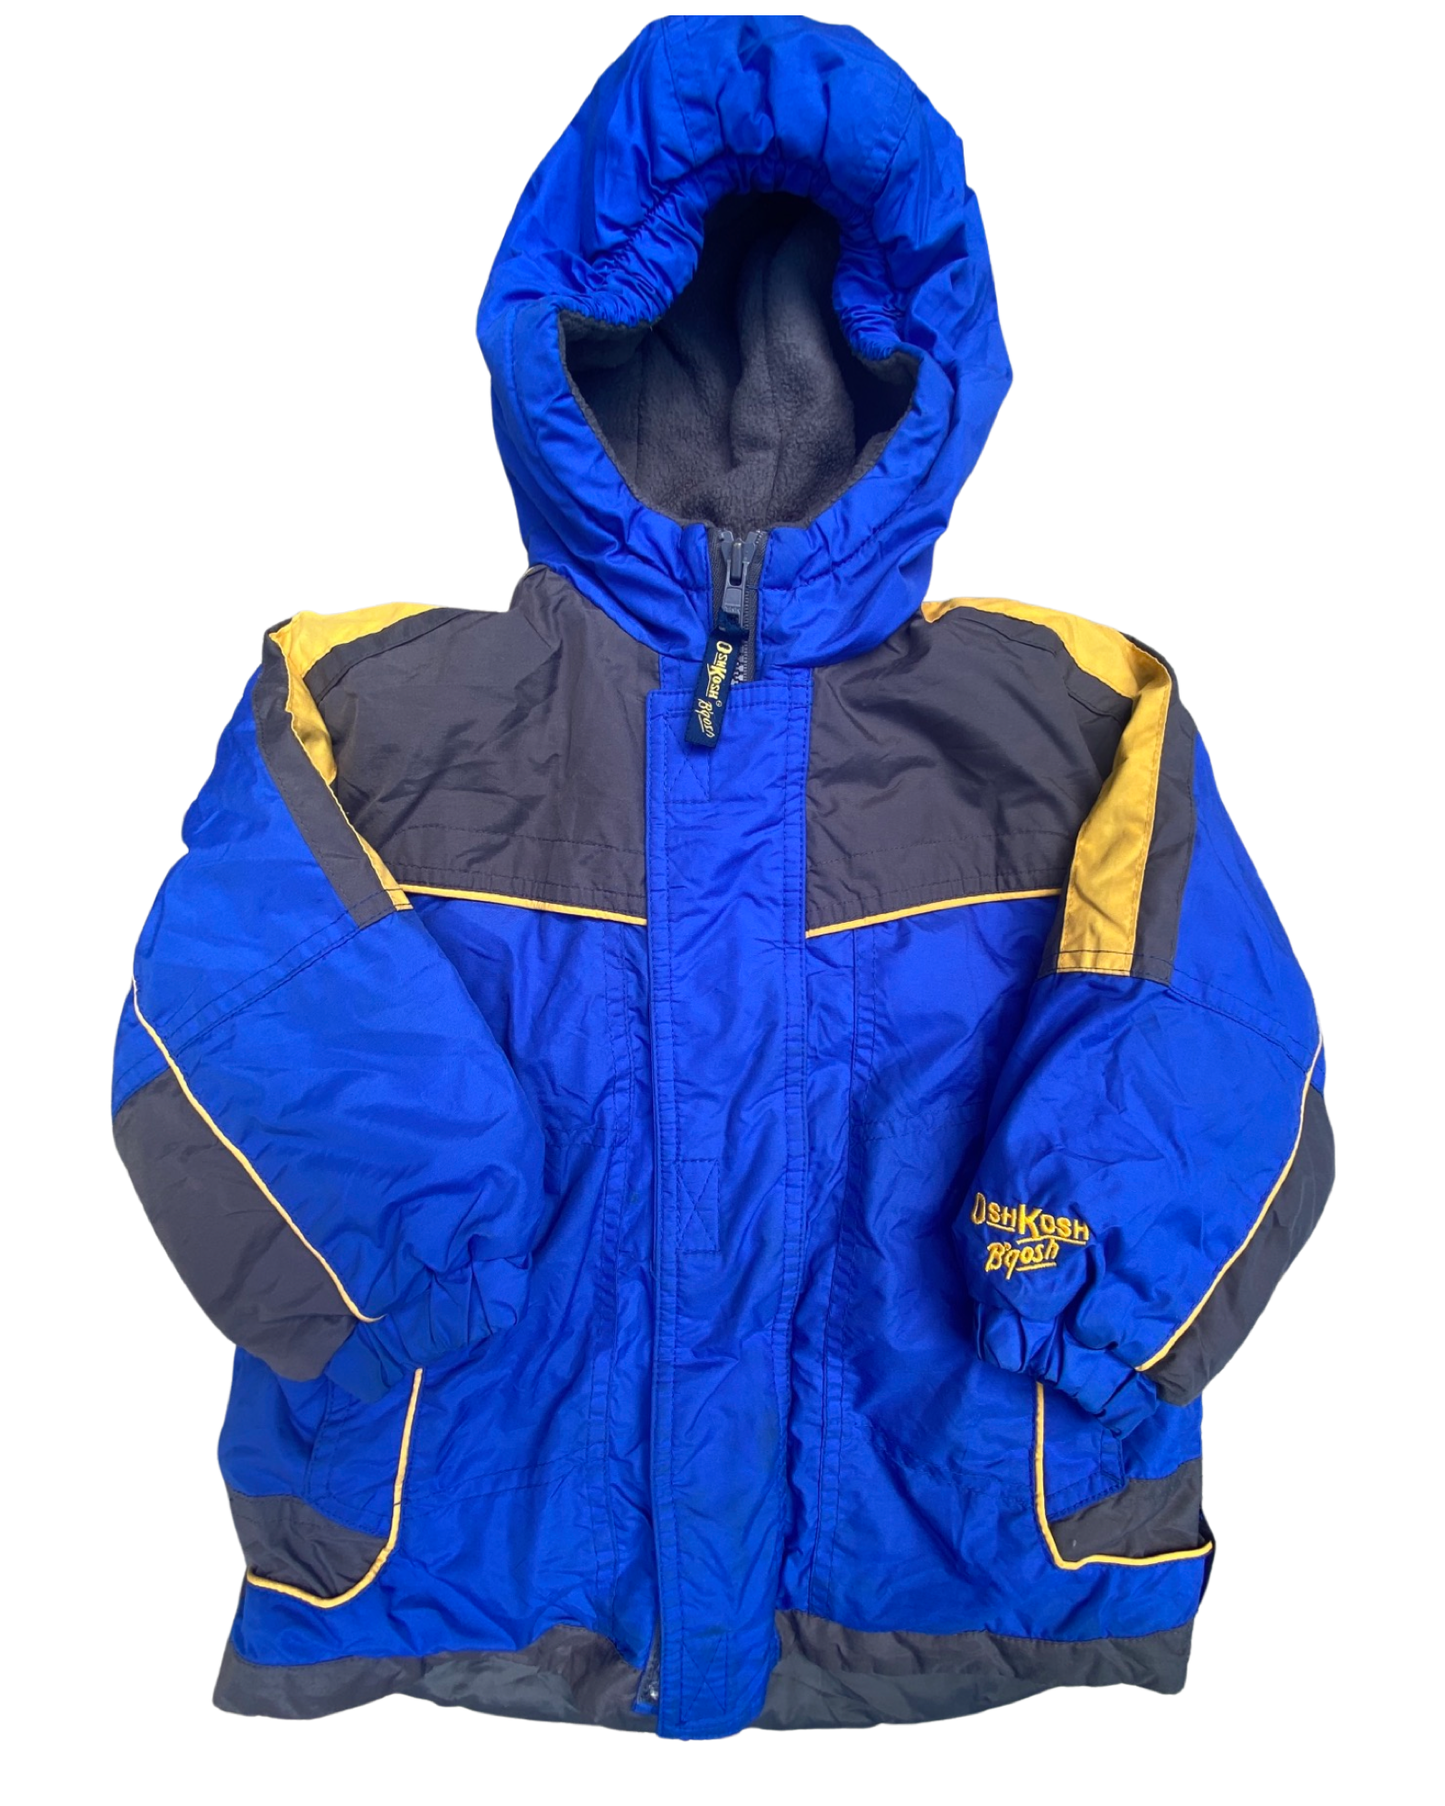 Osh Kosh vintage ski jacket (size 2-3yrs)